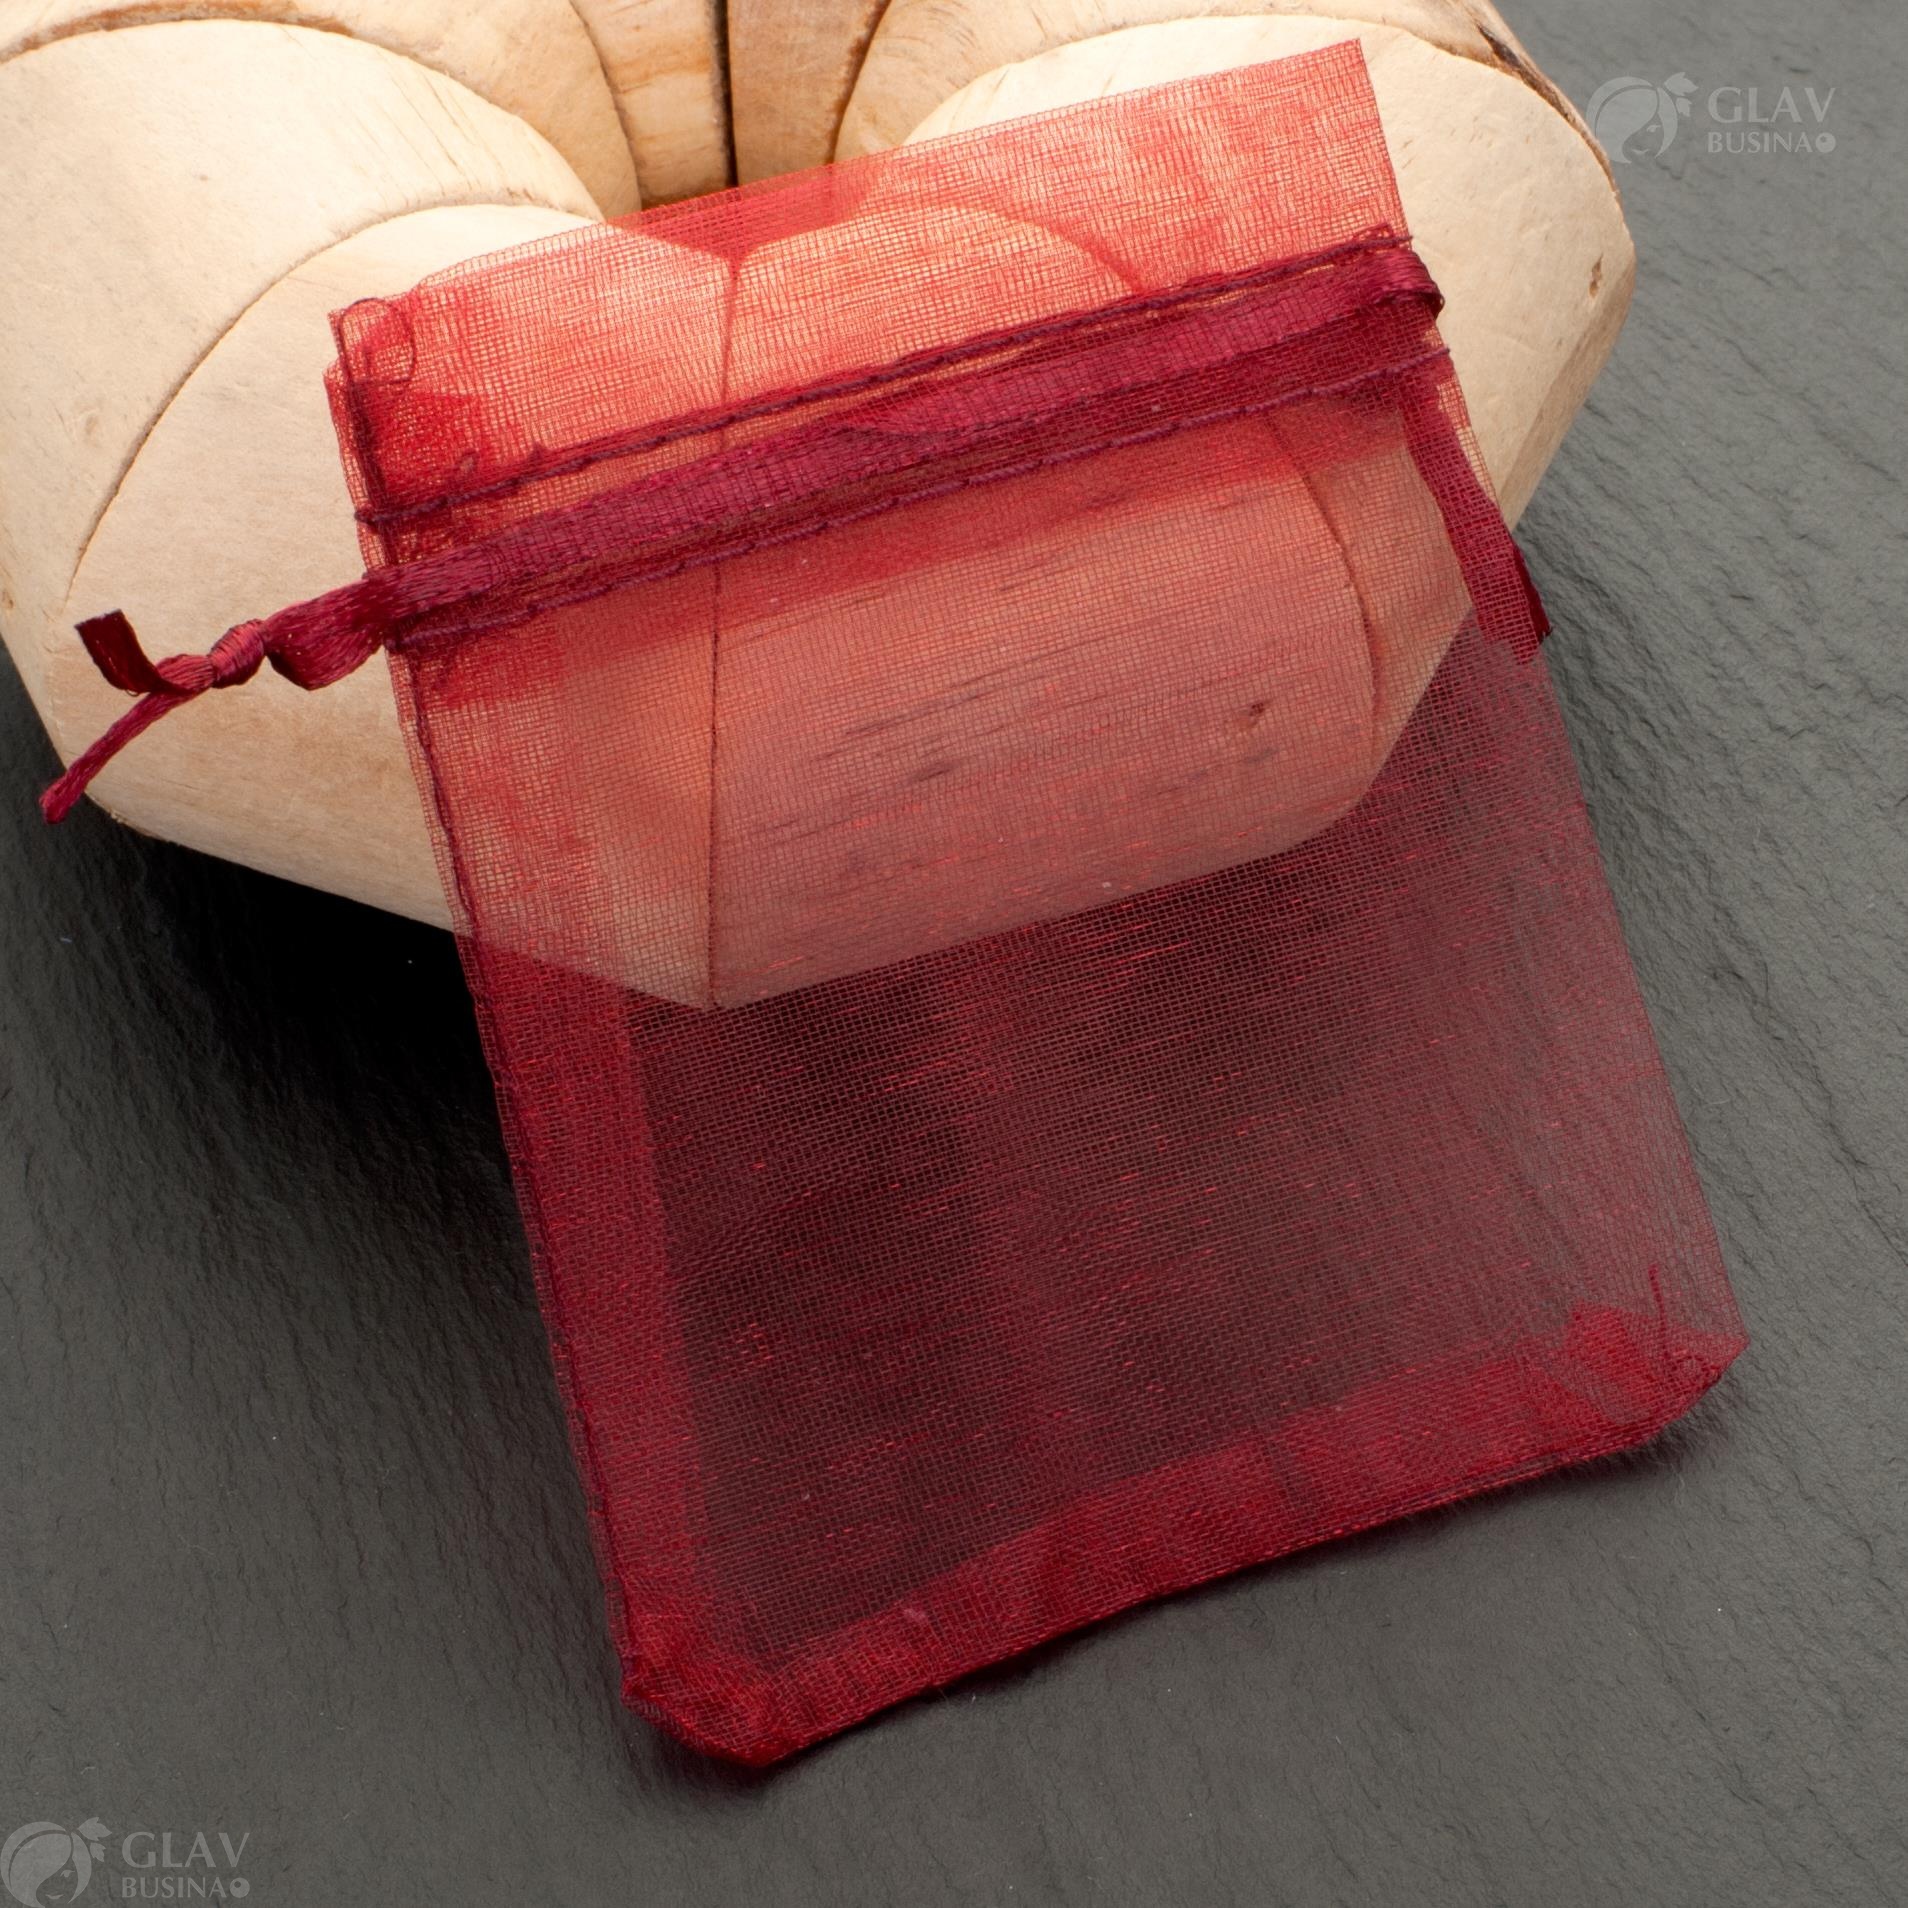 Бордовые мешочки из органзы с ленточкой, размером 7x9 см, идеальны для упаковки подарков и украшений.